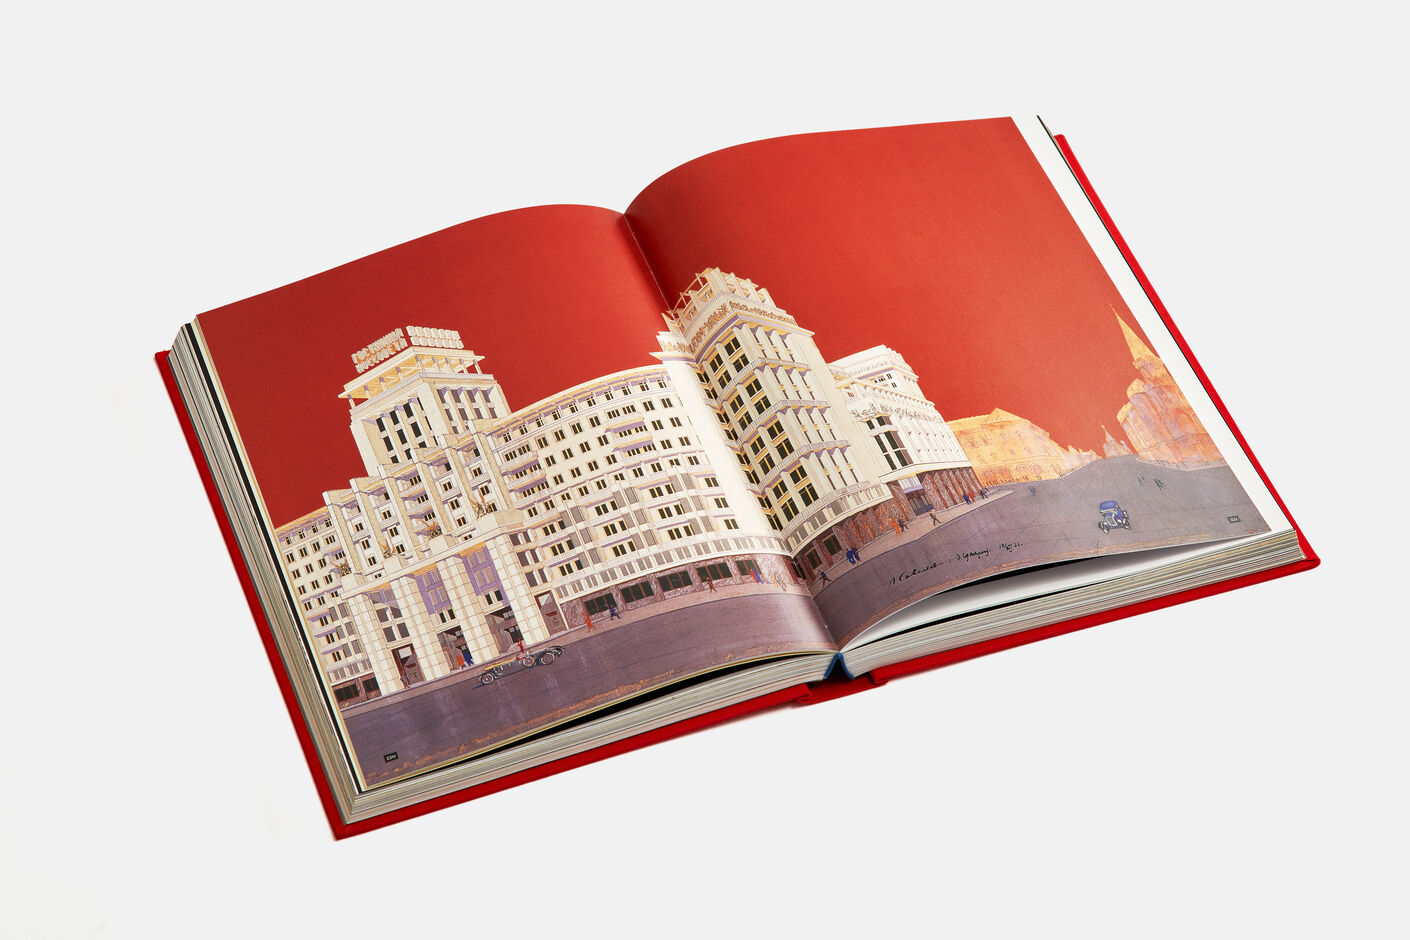 Подарочная книга Россий 20-й век, 2003, Агей Томеш, Лаборатория дизайна НИУ ВШЭ